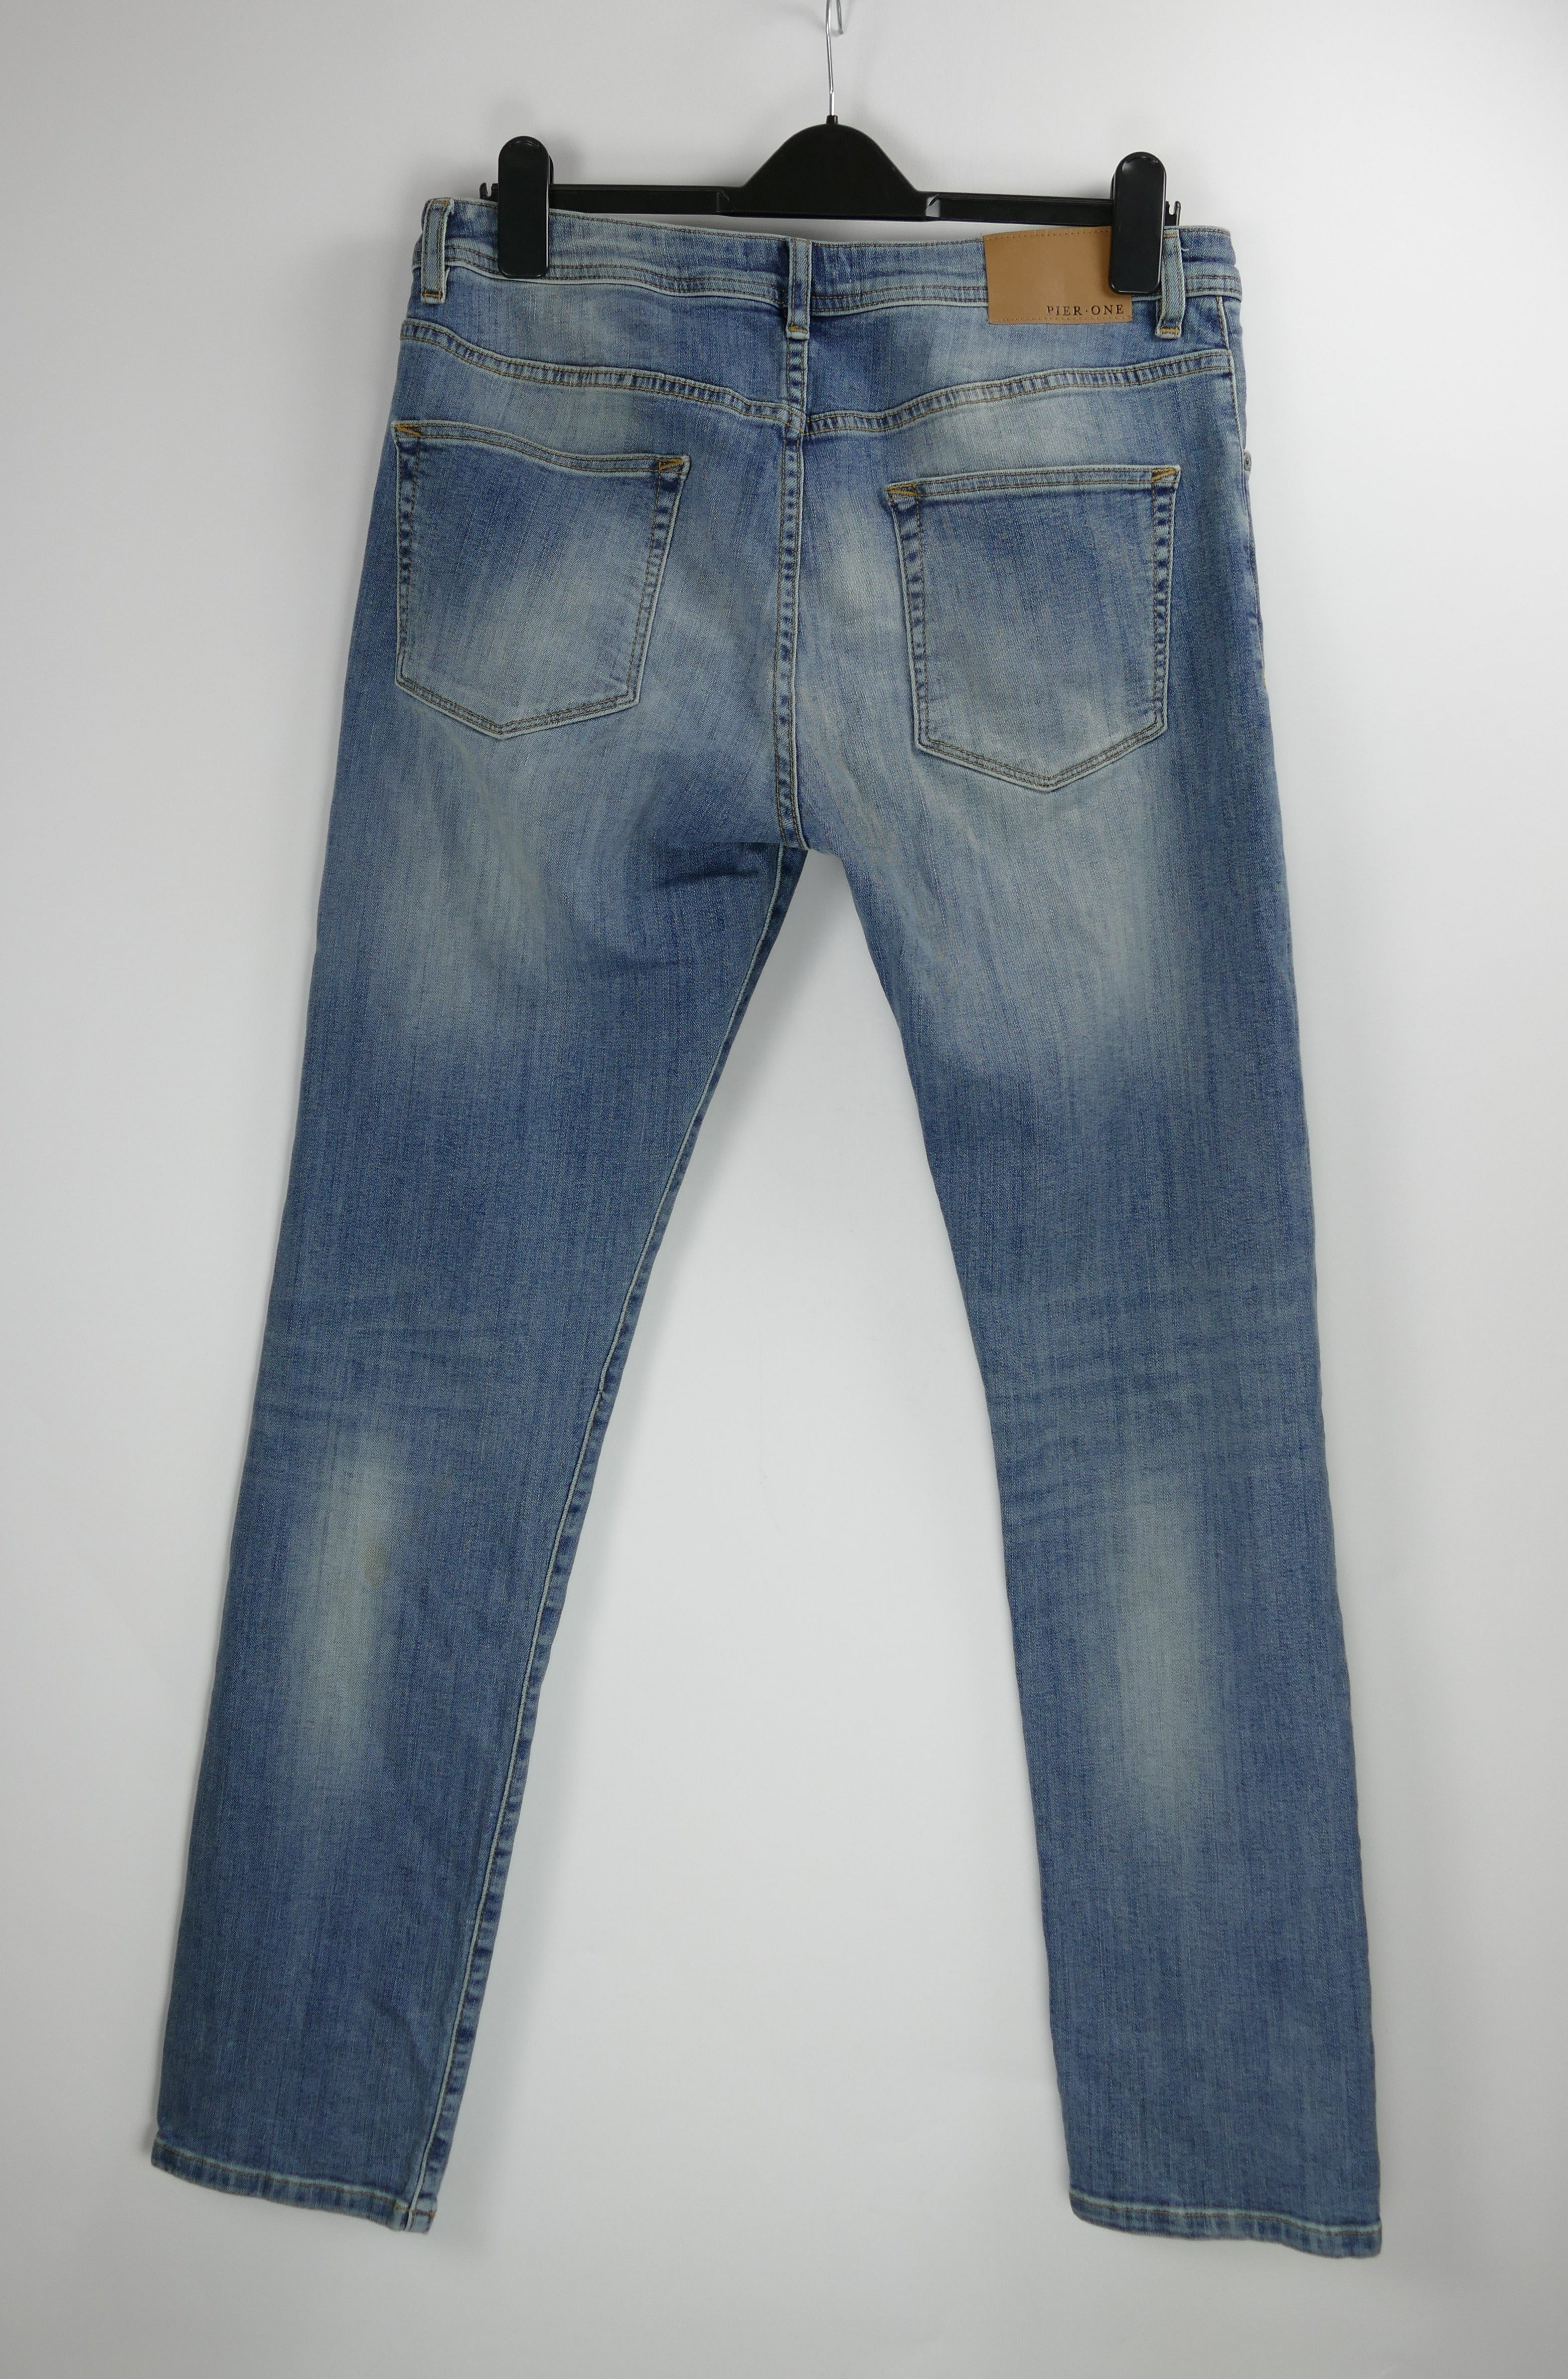 Blaue Herren Jeans, Gr. 33/34, PIER ONE